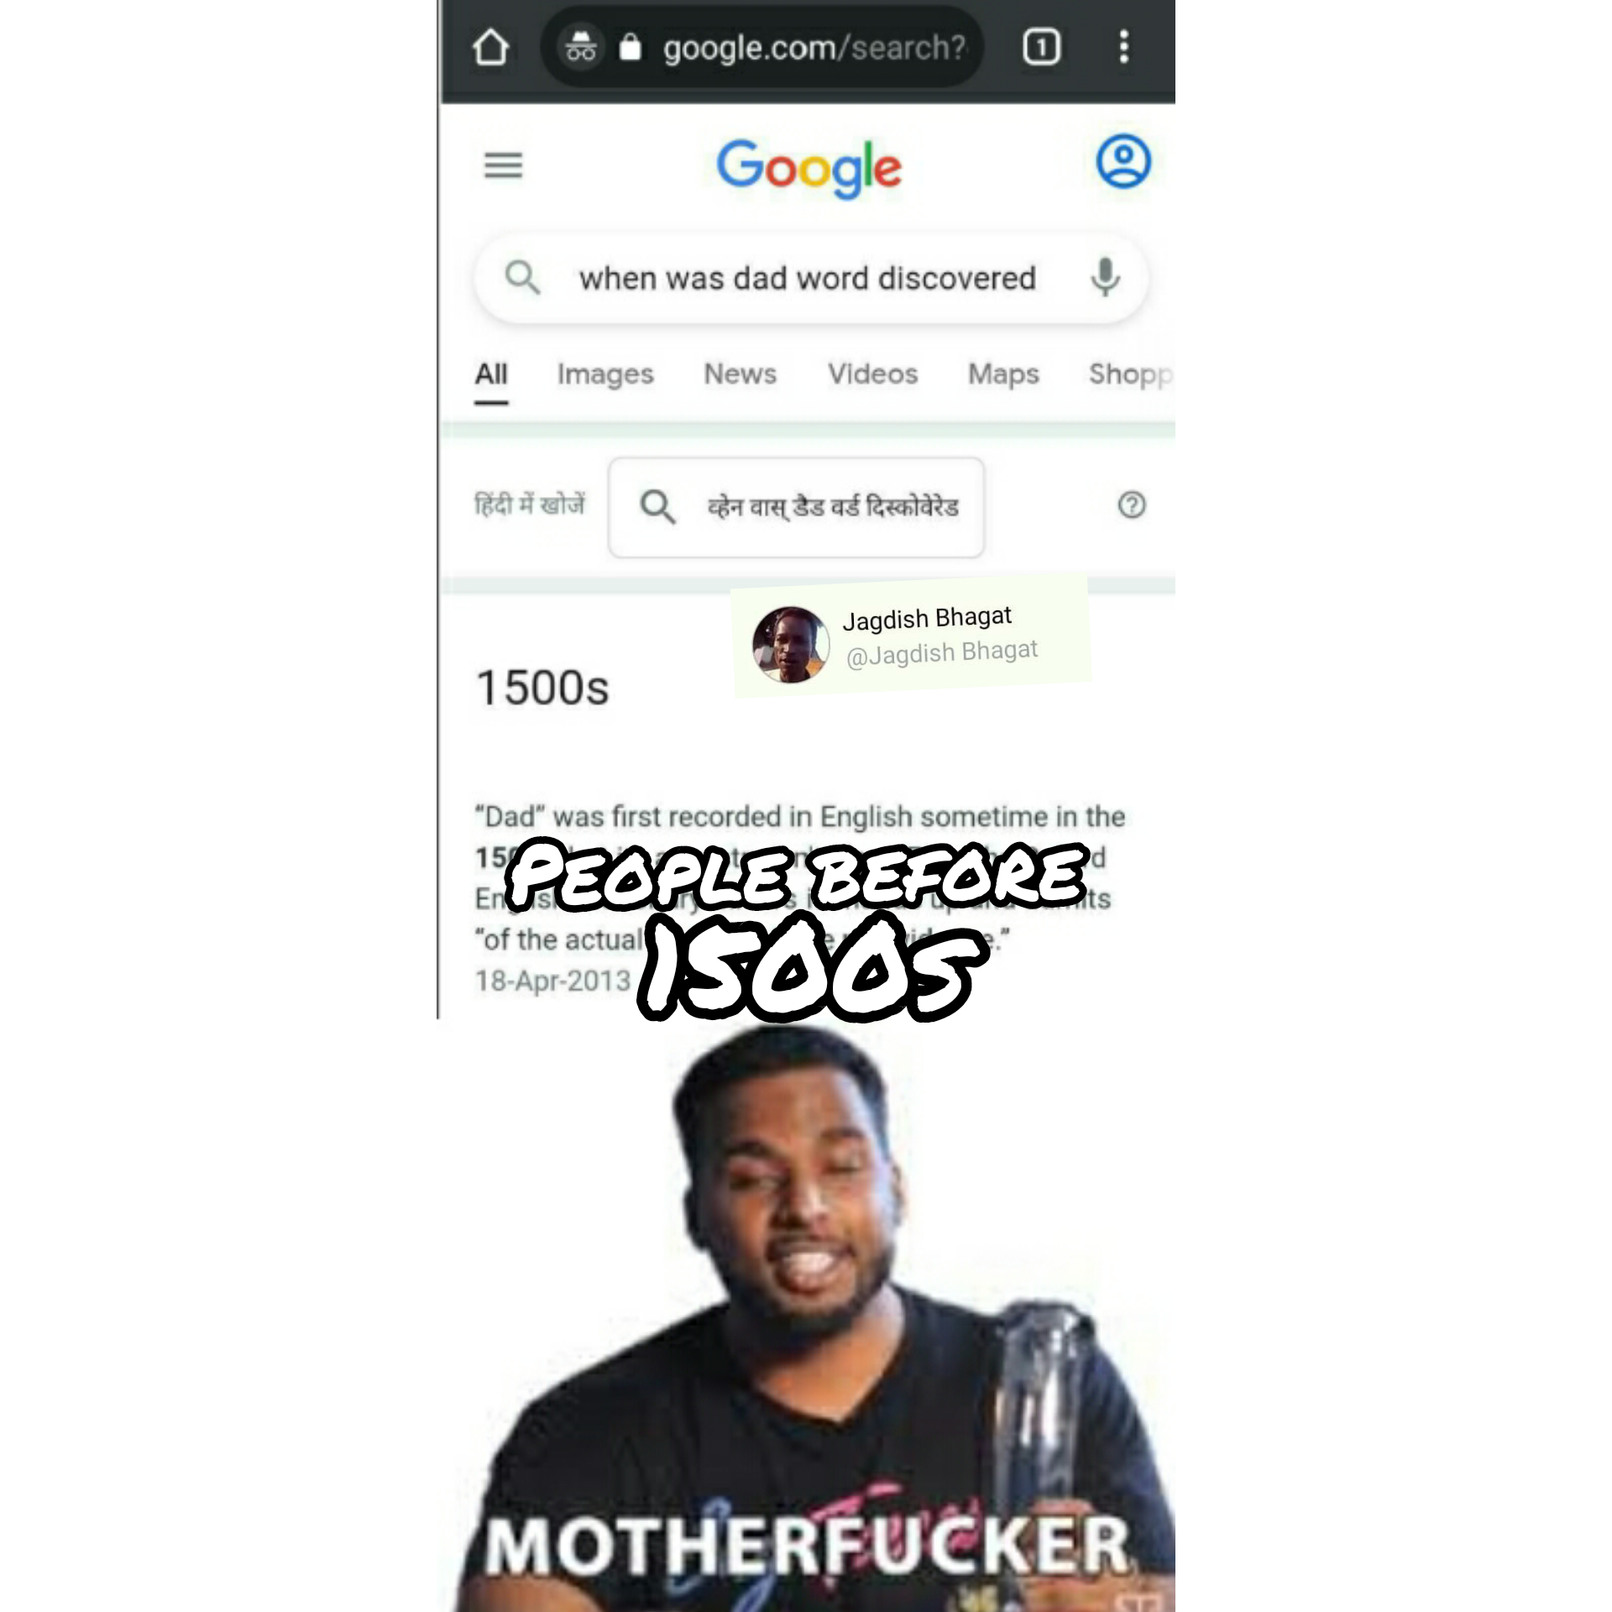 Motherbucker - meme